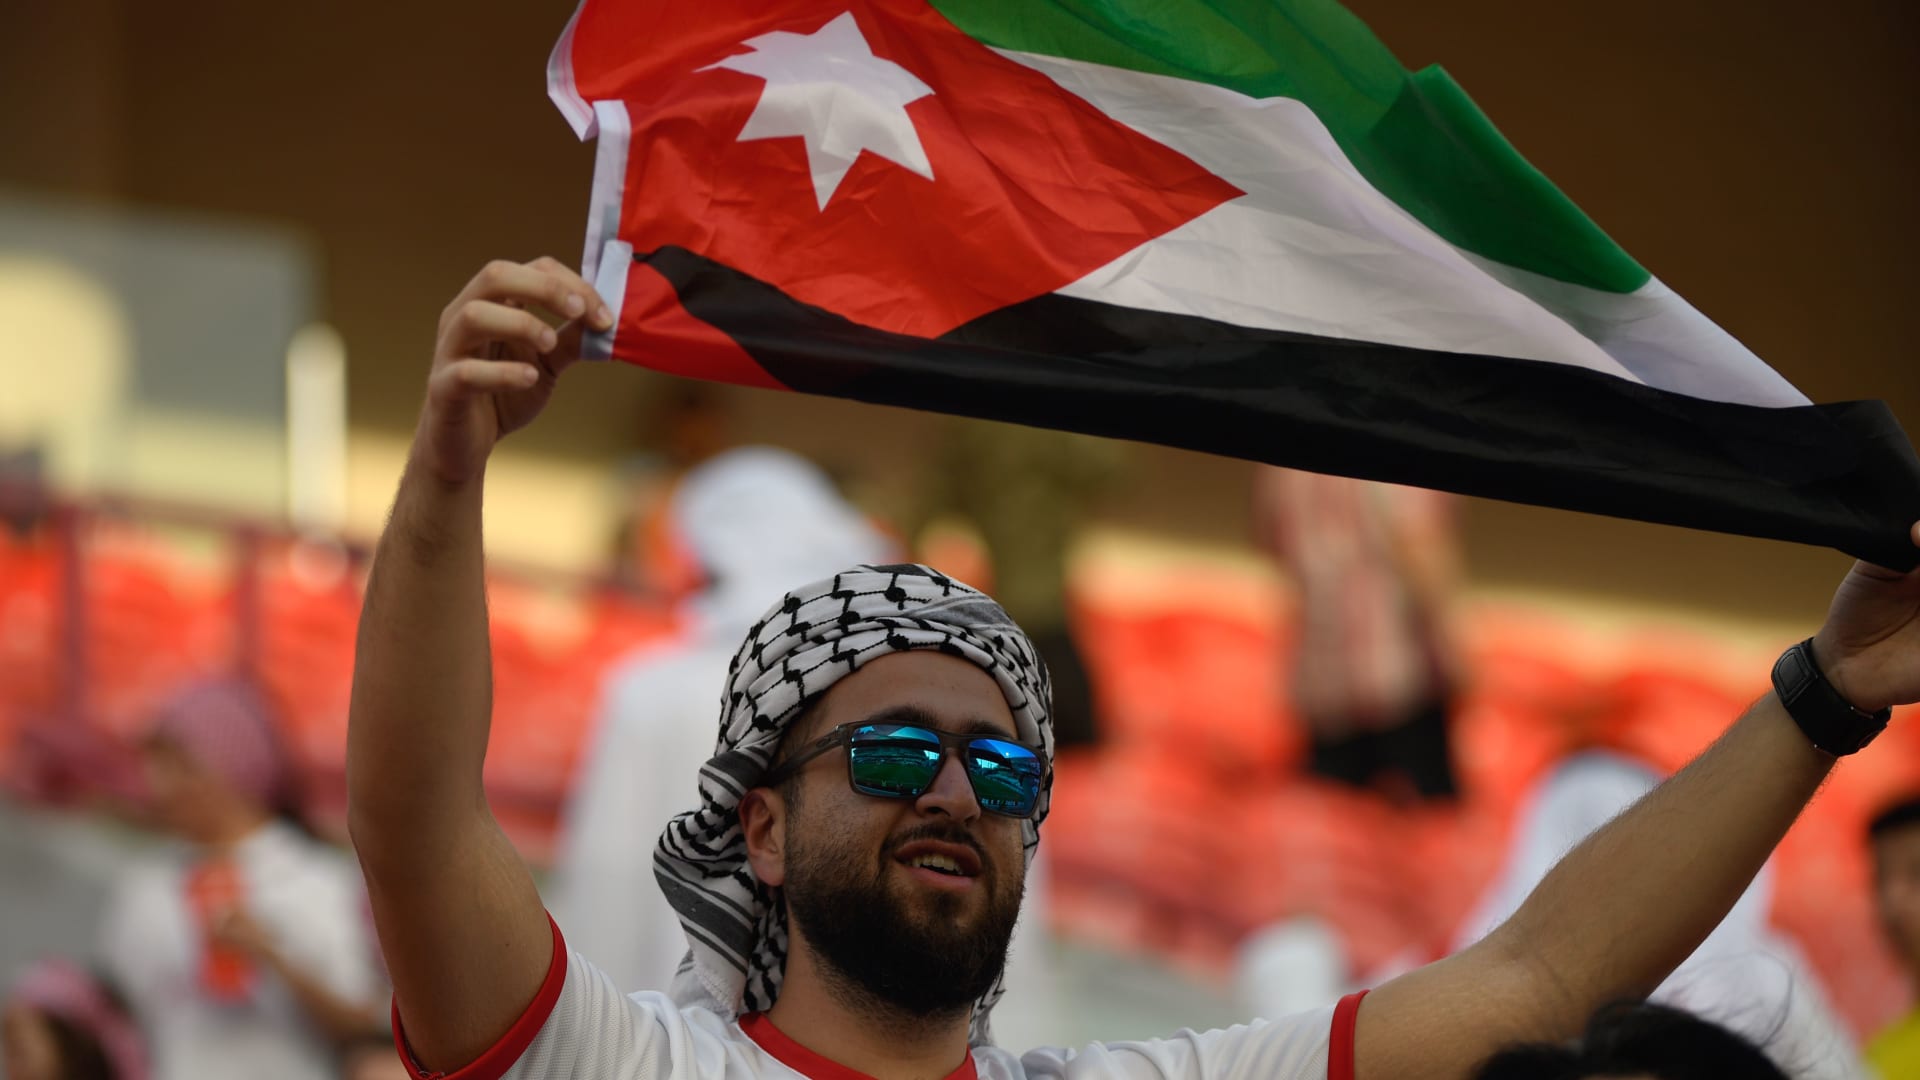 الاتحاد الأردني يعلق على قضية "جنس لاعبة إيران": لم نتلق ردا رسميا